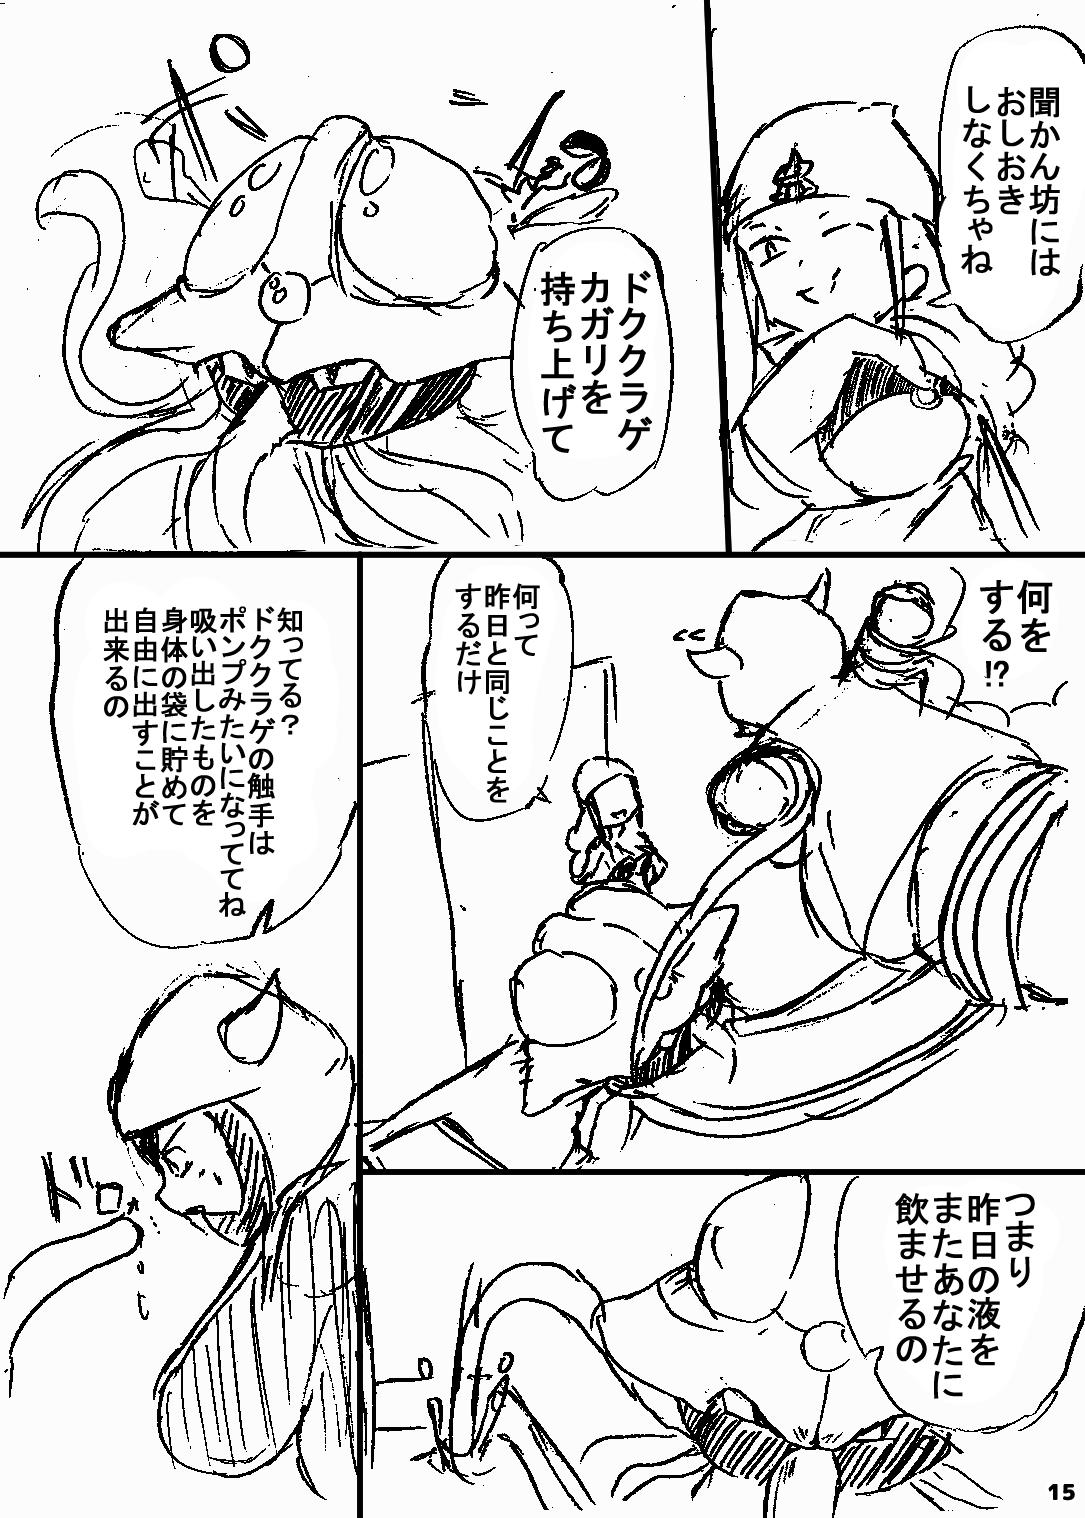 ポケスペカガリ肥満化漫画 13